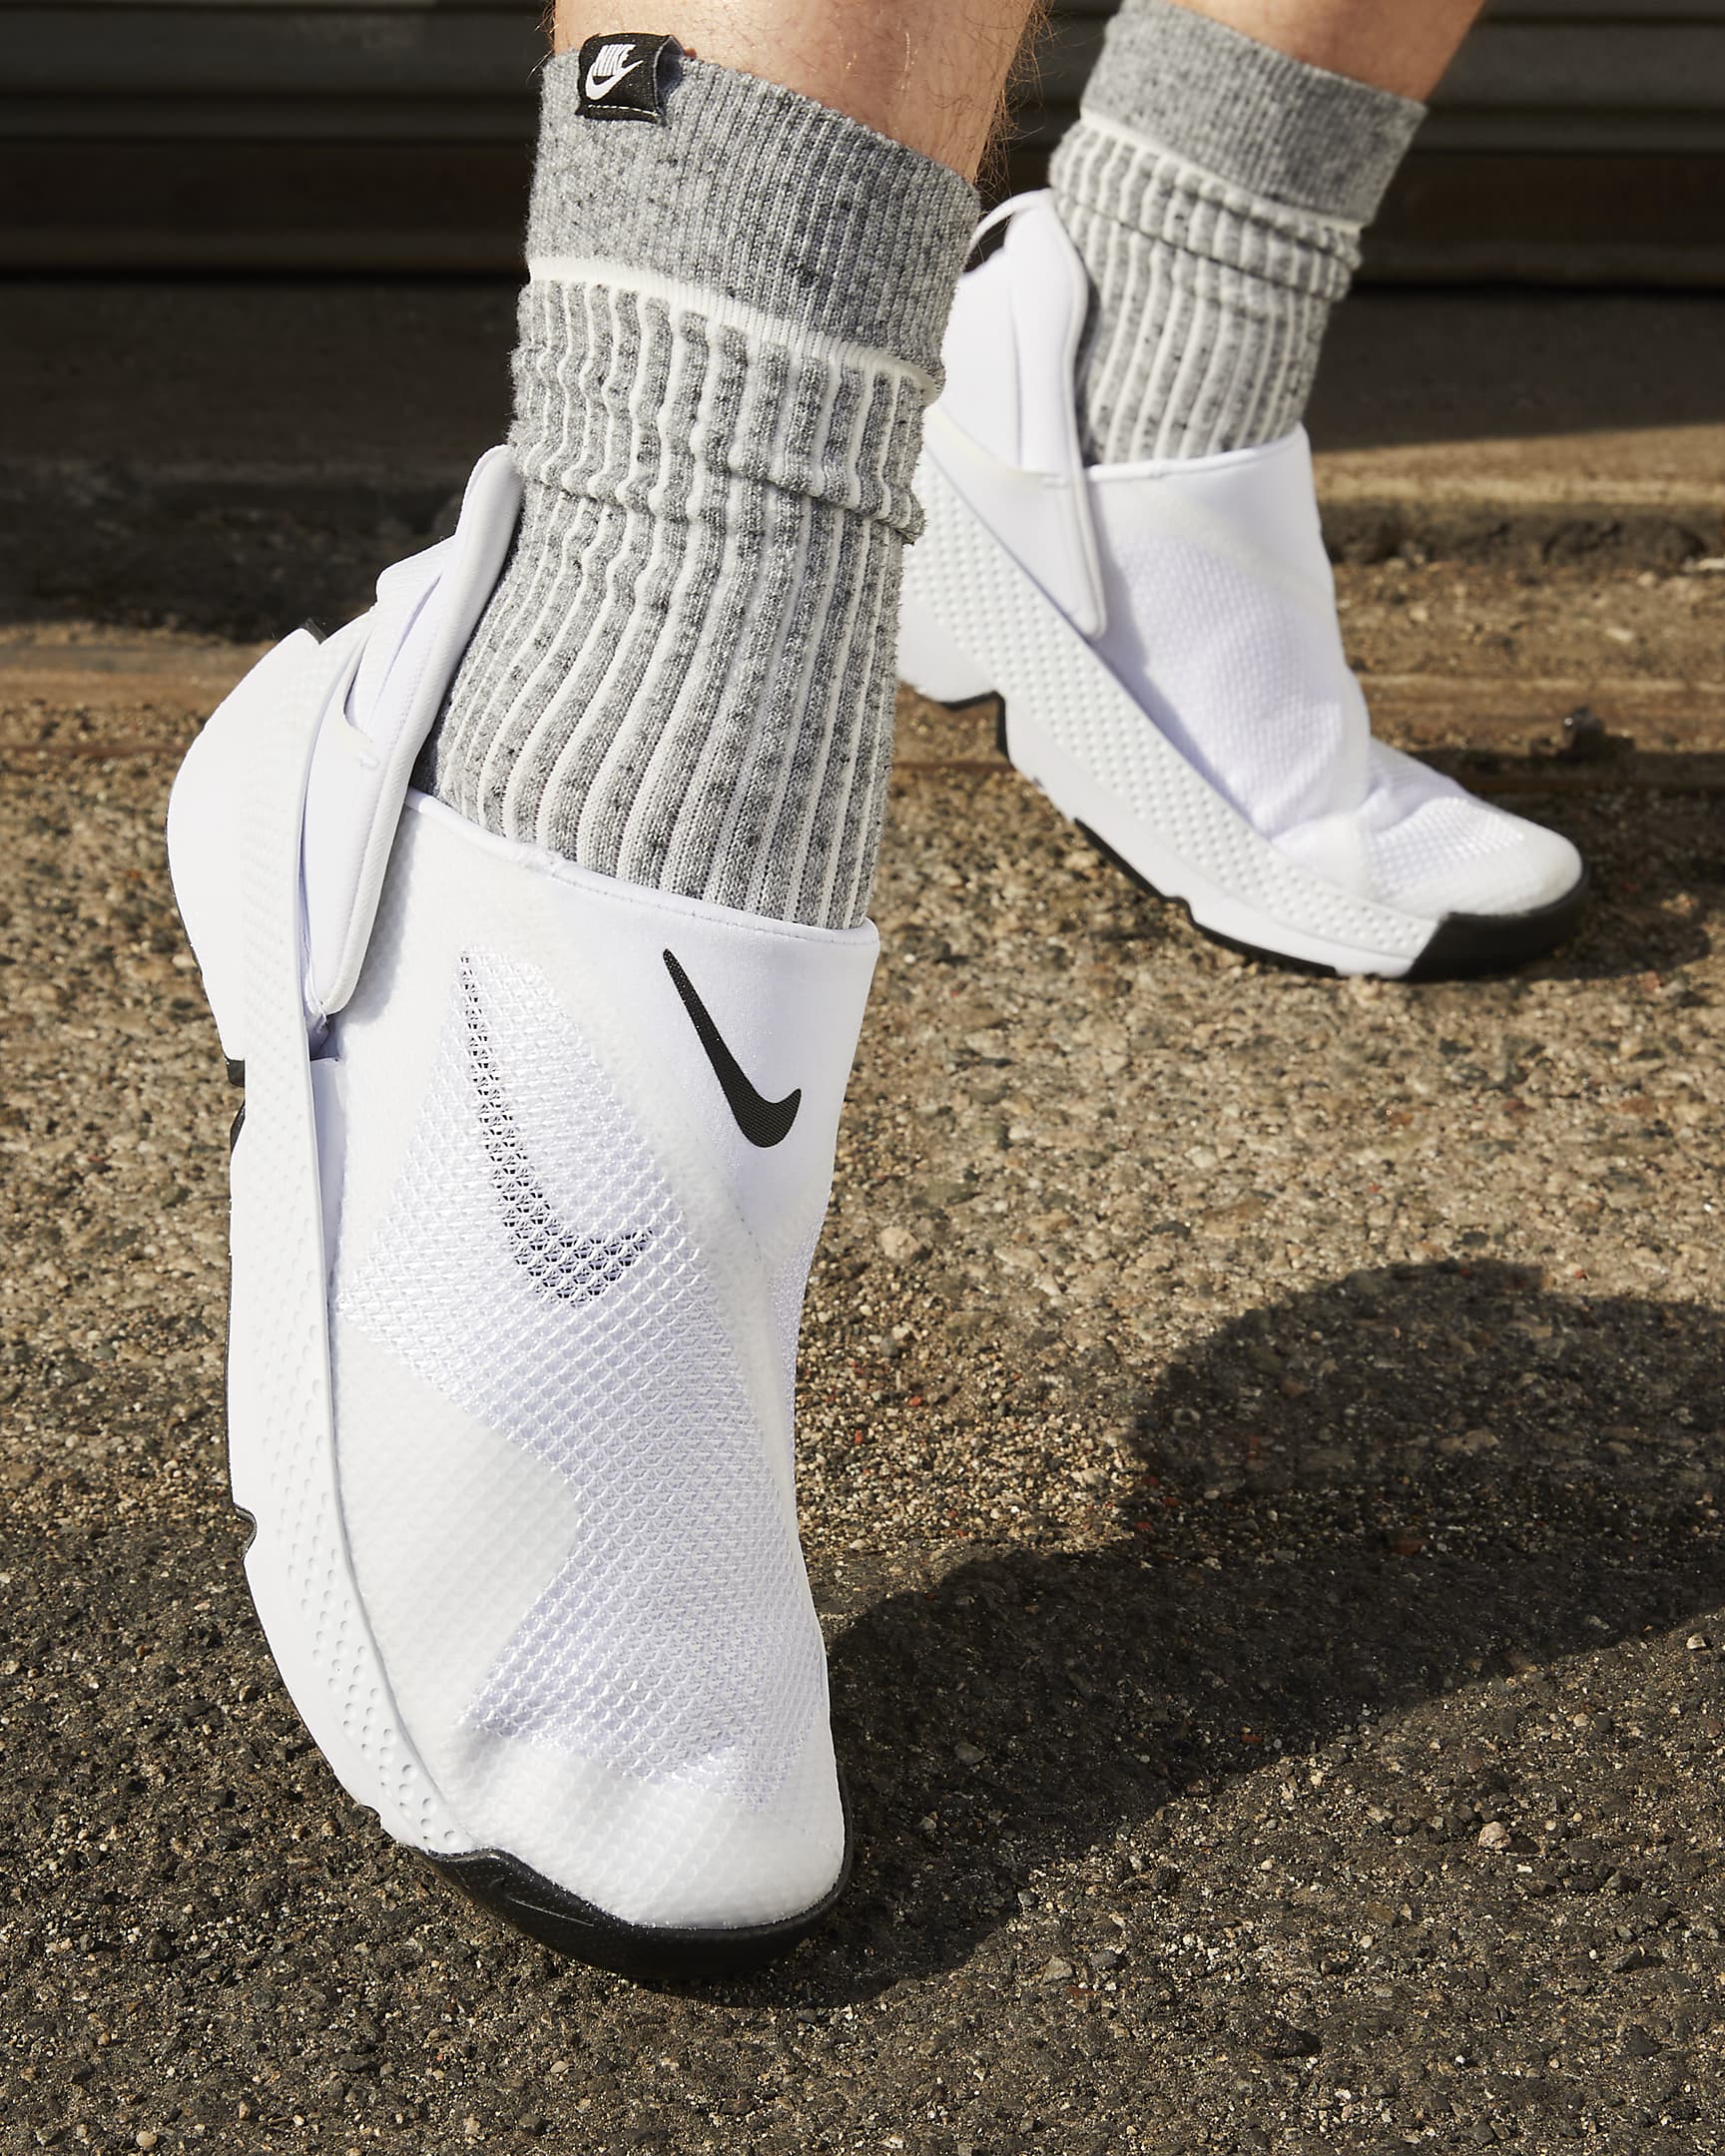 Nike Go FlyEase Zapatillas fáciles de poner y quitar - Blanco/Negro